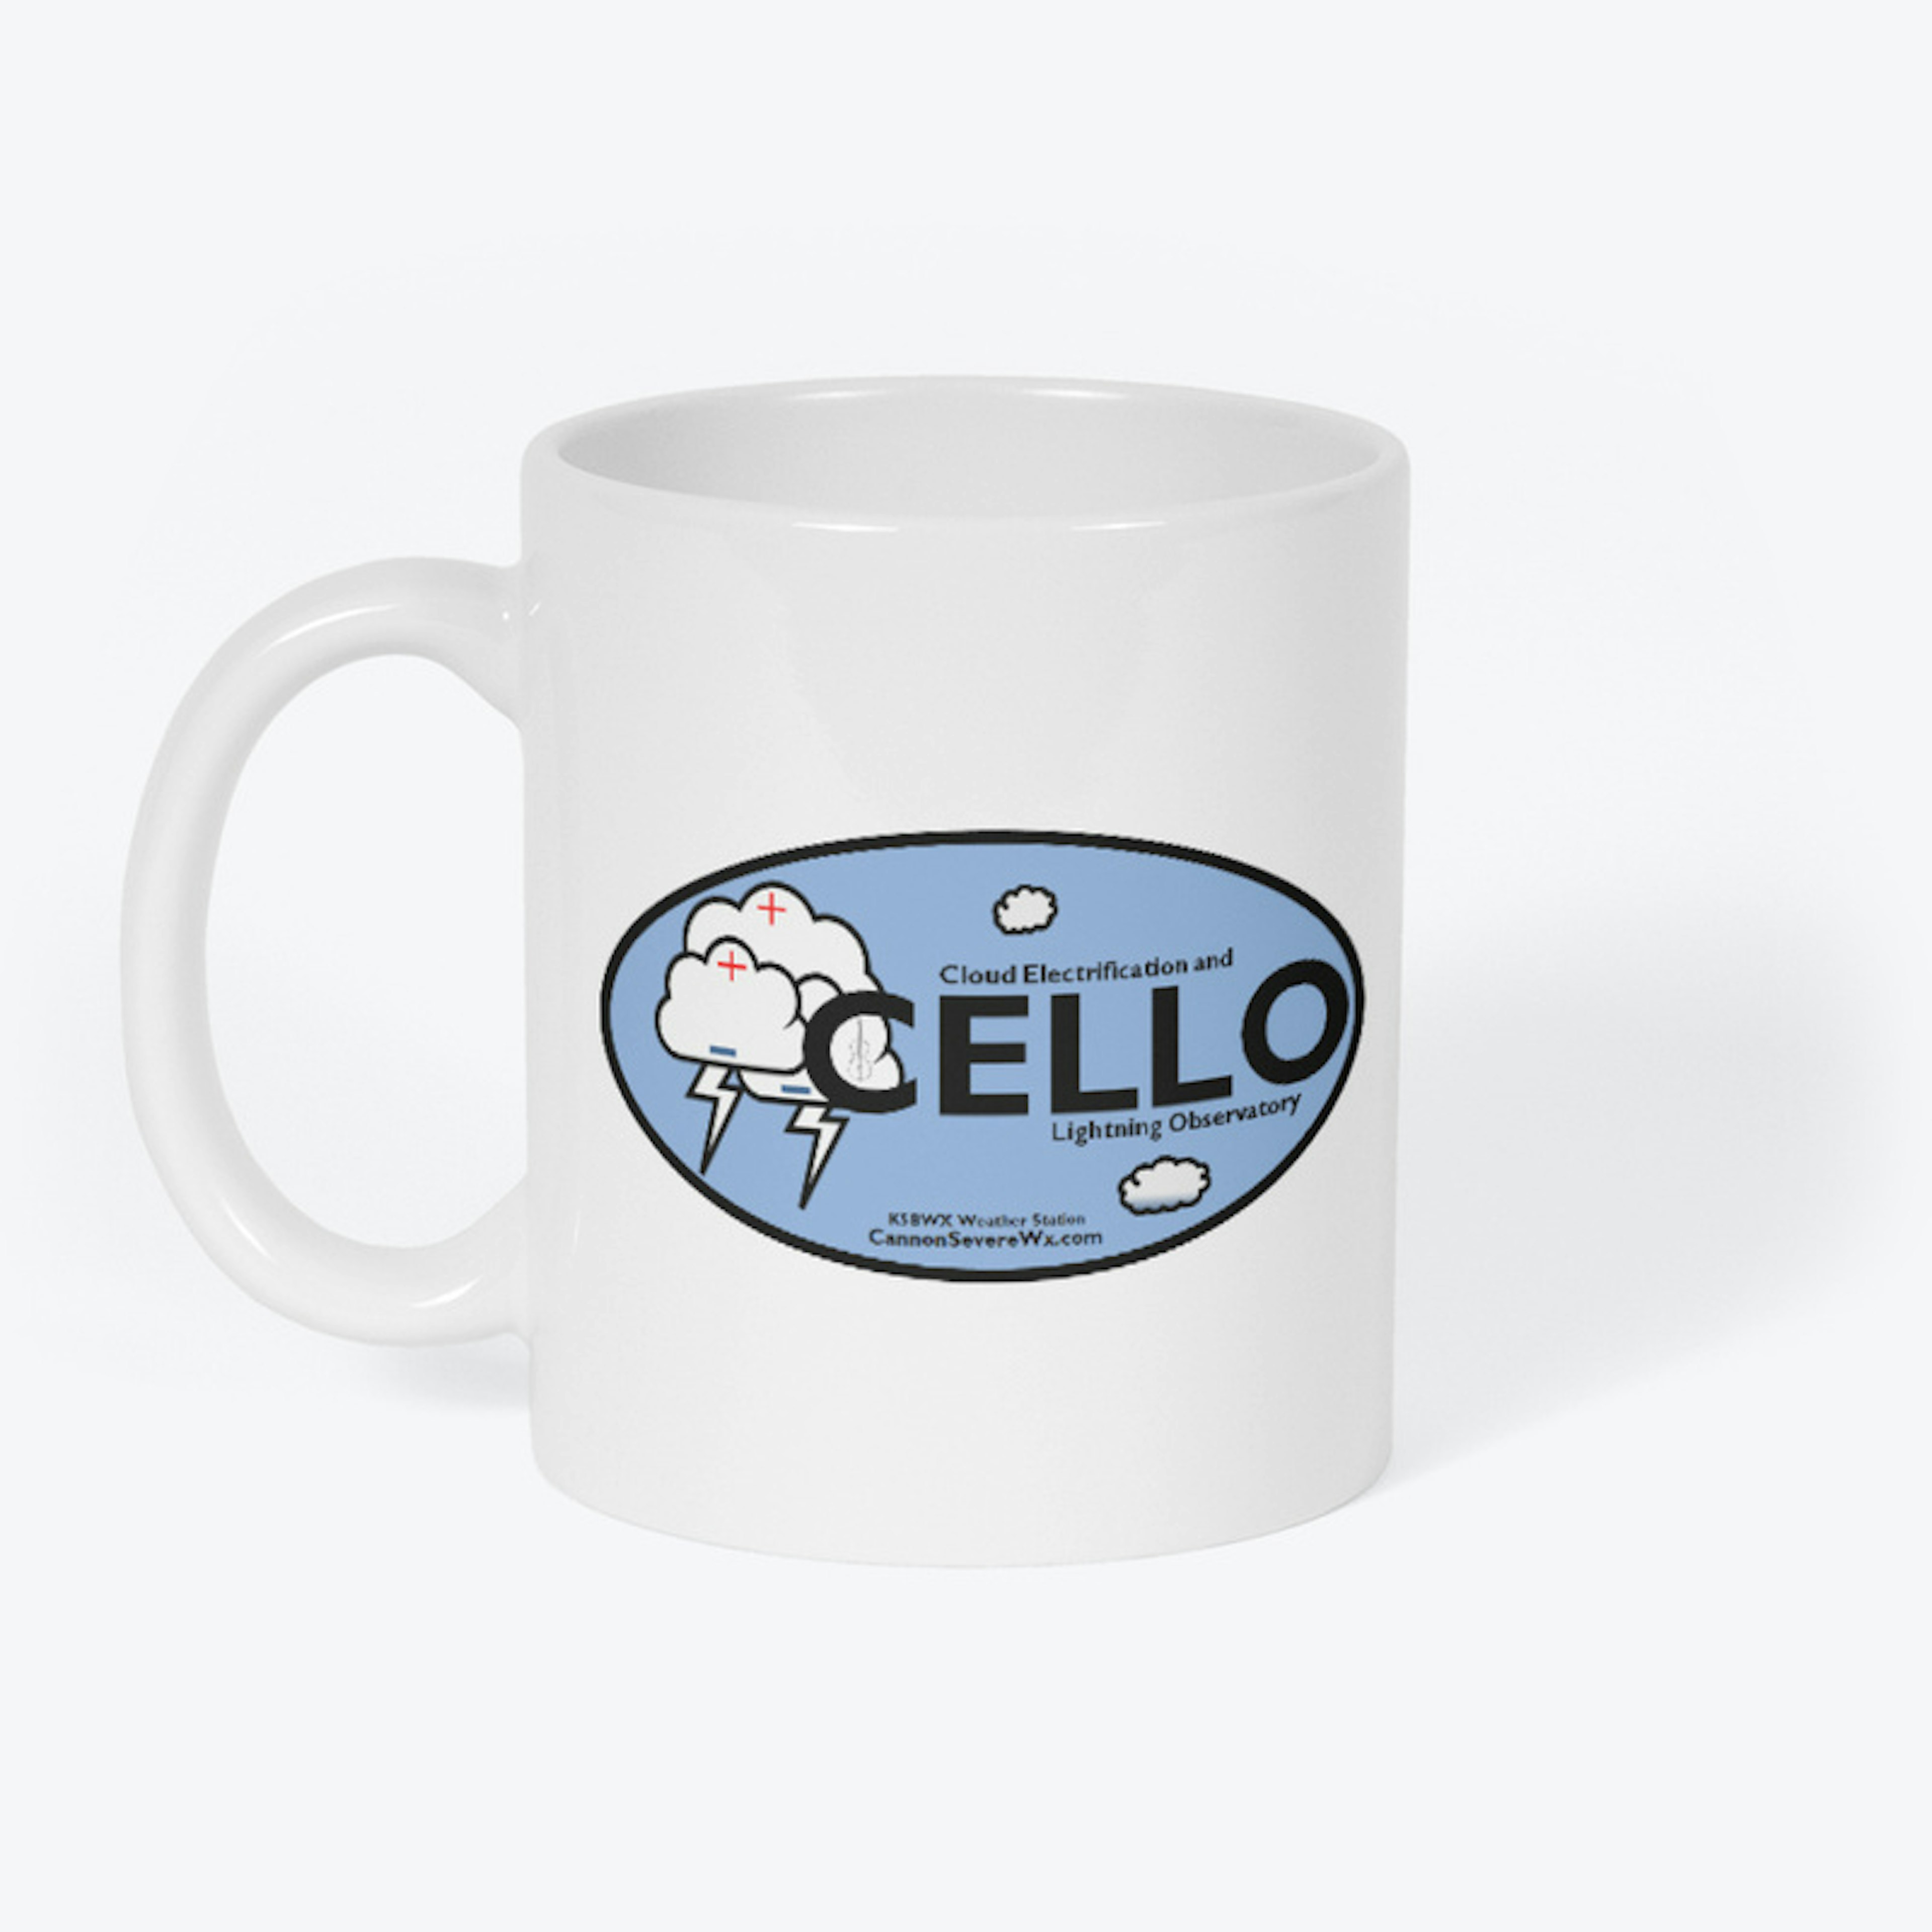 CELLO Mug